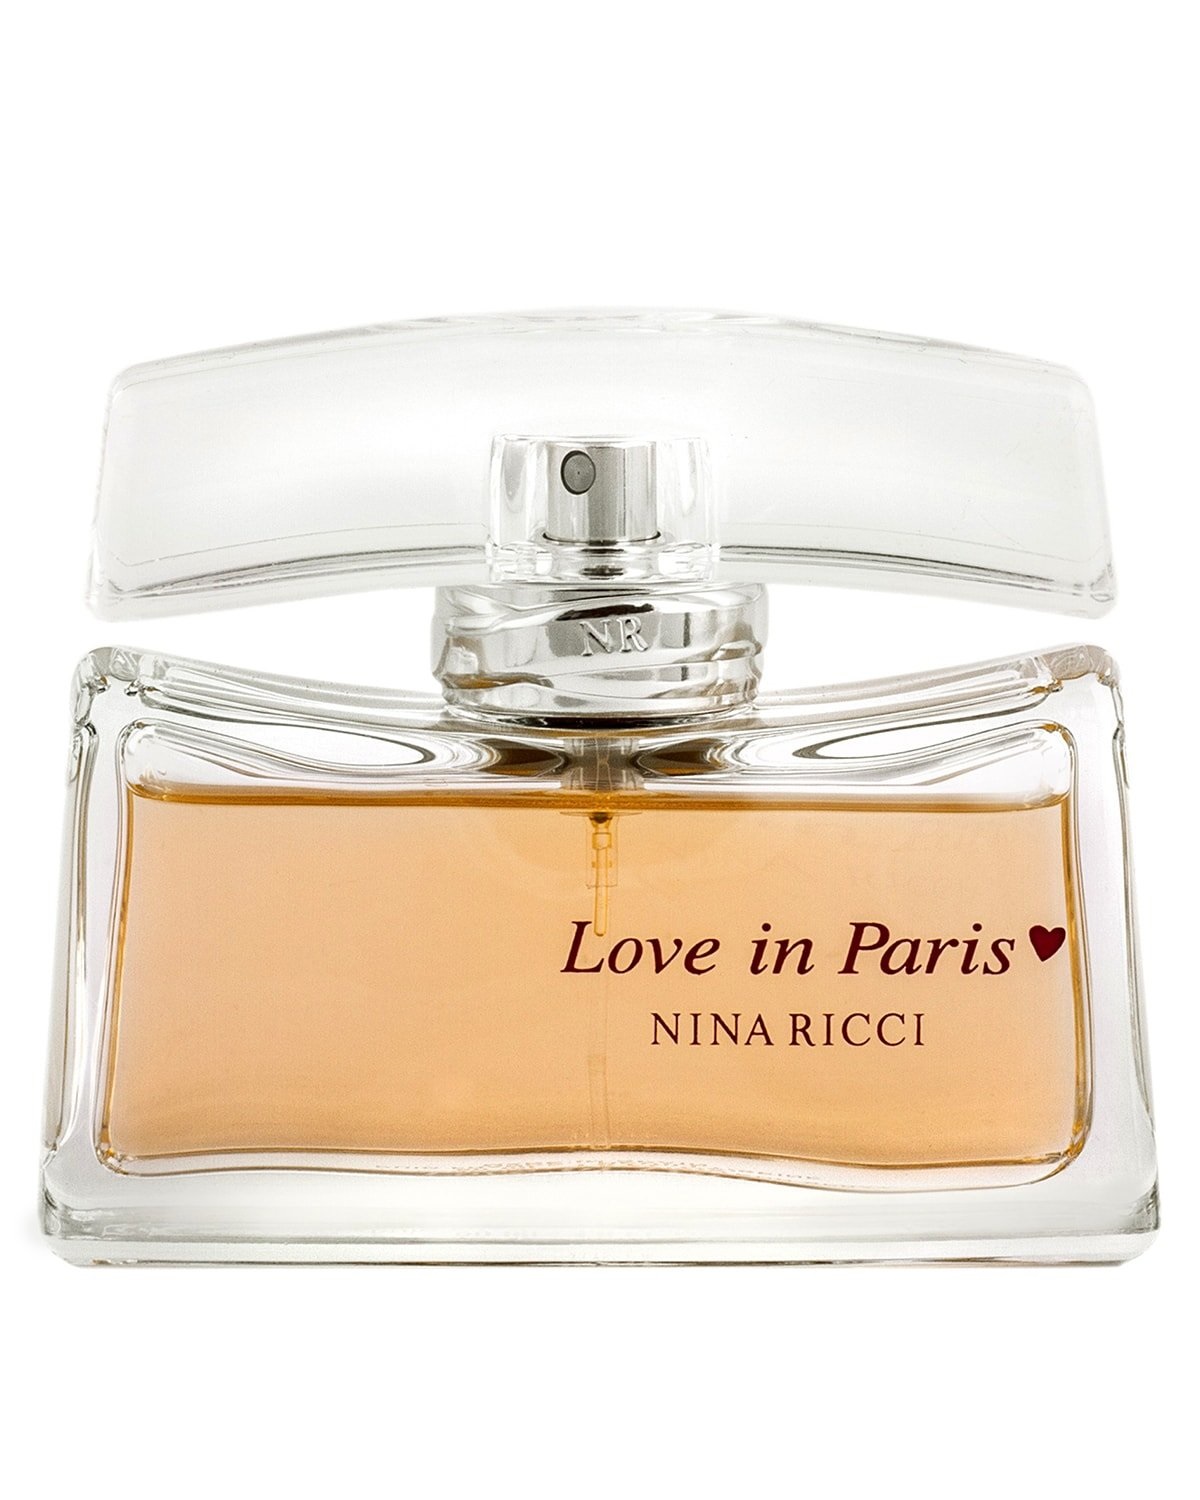 любовь в париже парфюм